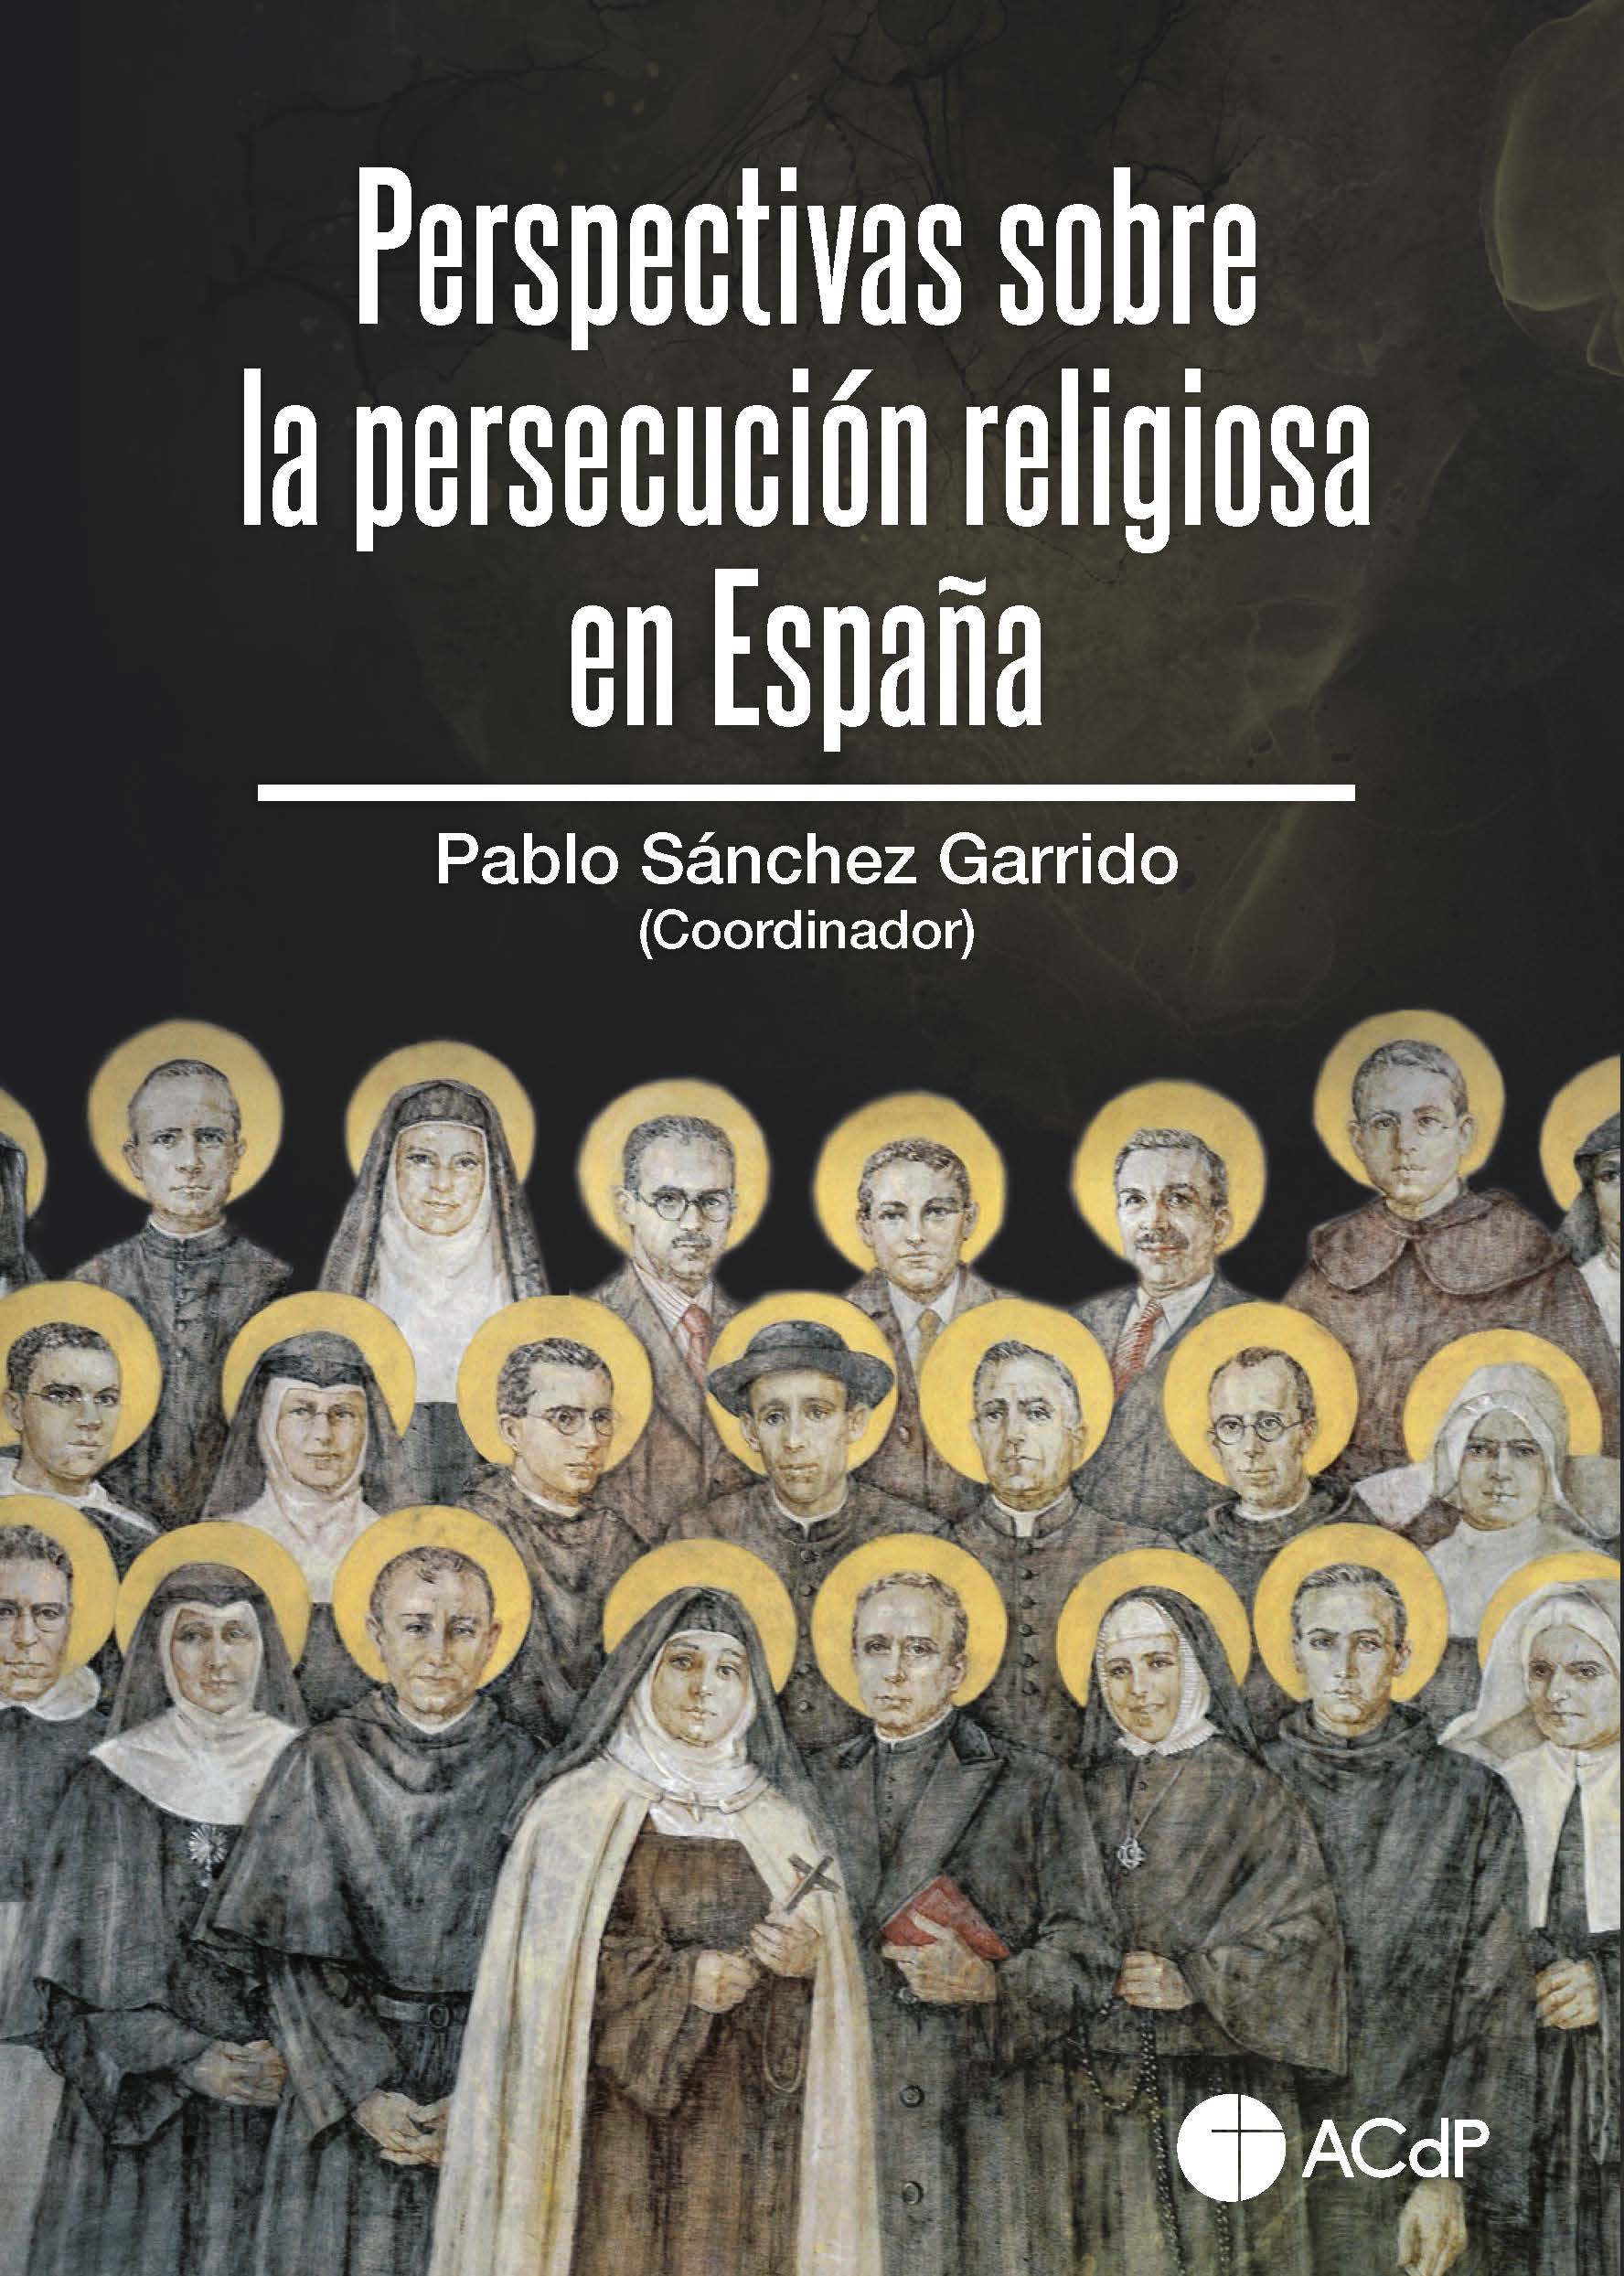 Imagen de portada del libro Perspectivas sobre la persecución religiosa en España